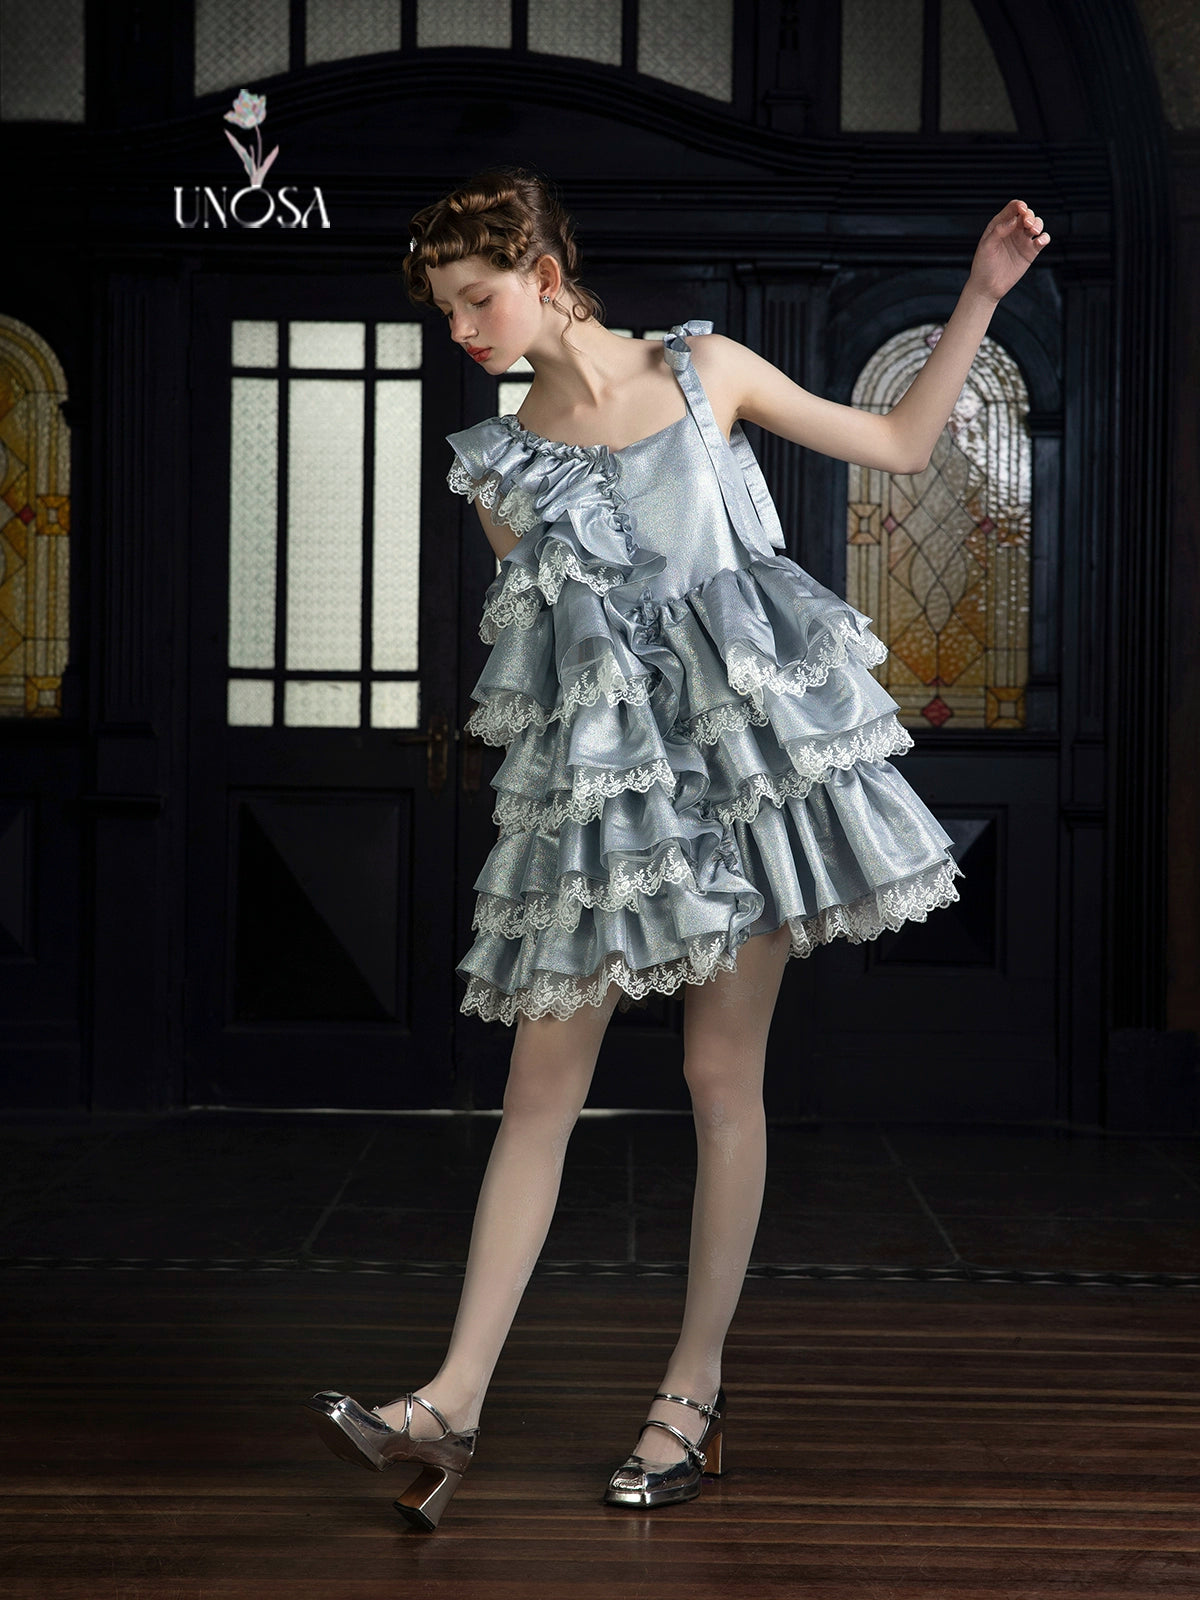 Silver White Sparkling Lace Asymmetrical A-Line Doll Dress